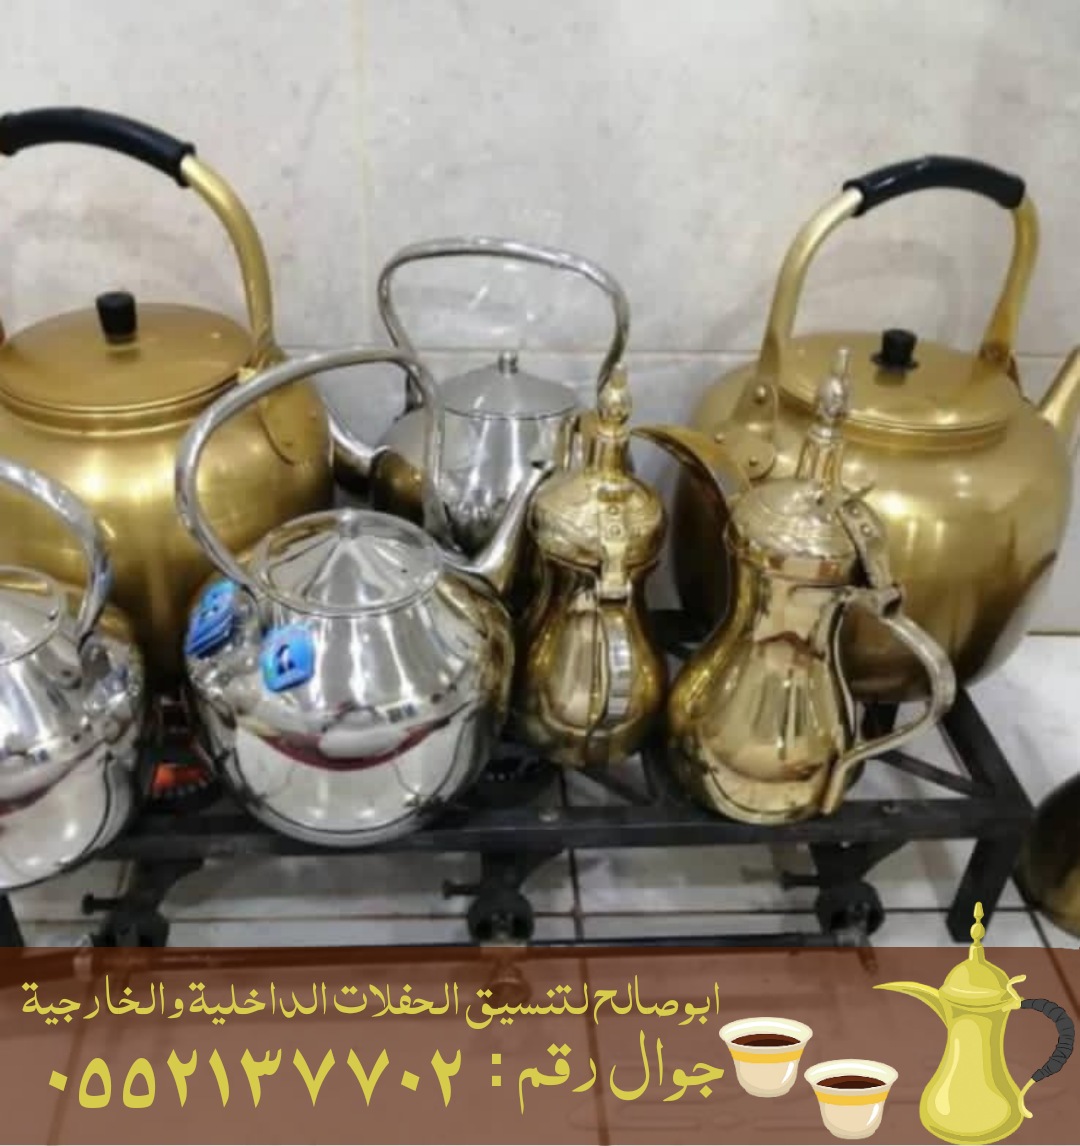 قهوجي في جدة , 0552137702 , صبابين رجال ونساء P_2183phudz7